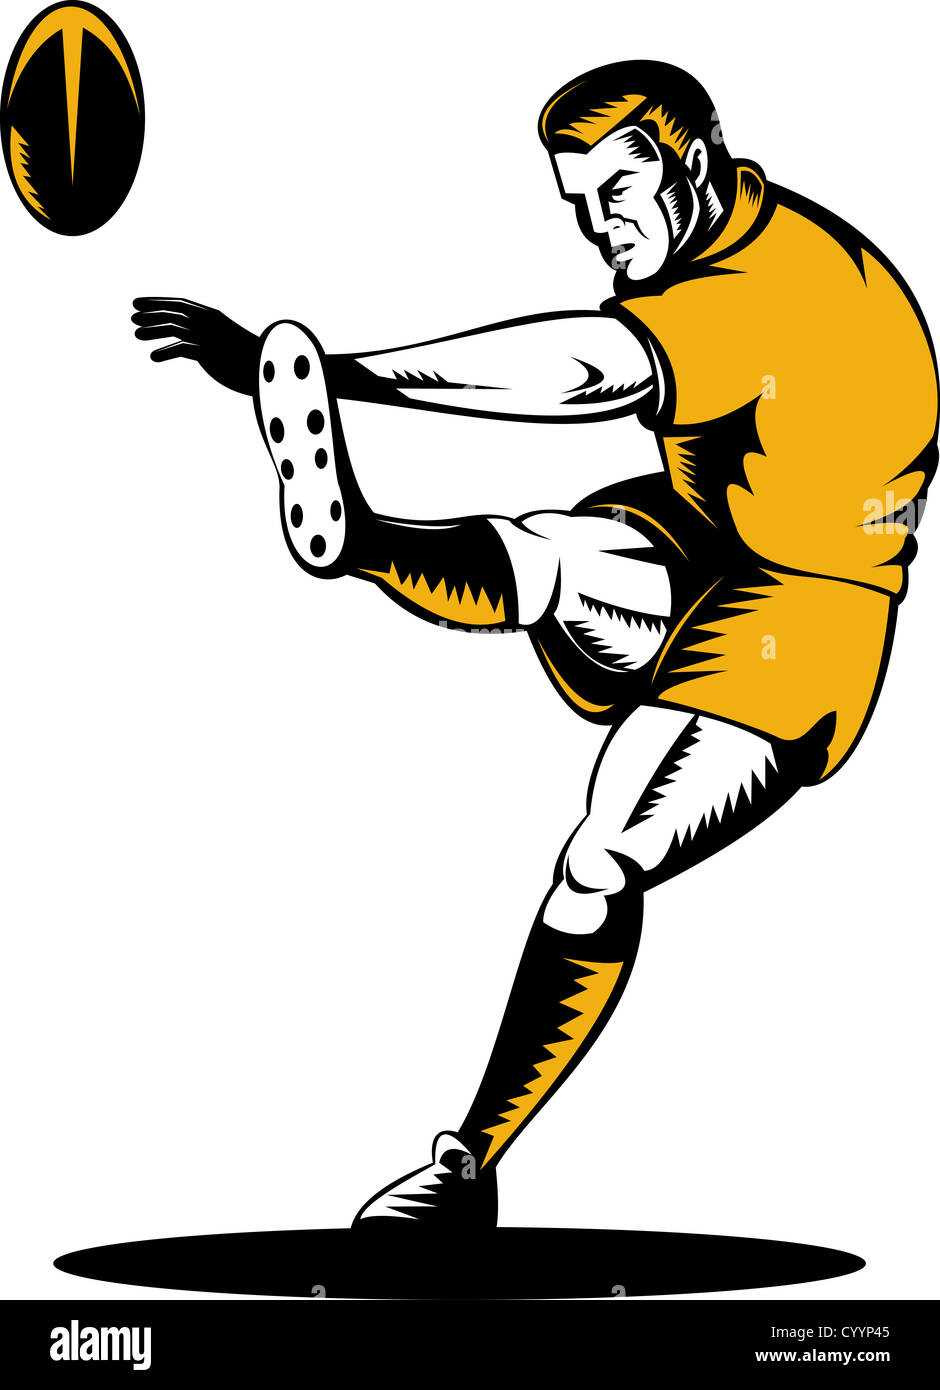 Illustration d'un joueur de rugby Kicking the ball sur fond isolé fait en rétro style gravure sur bois Banque D'Images